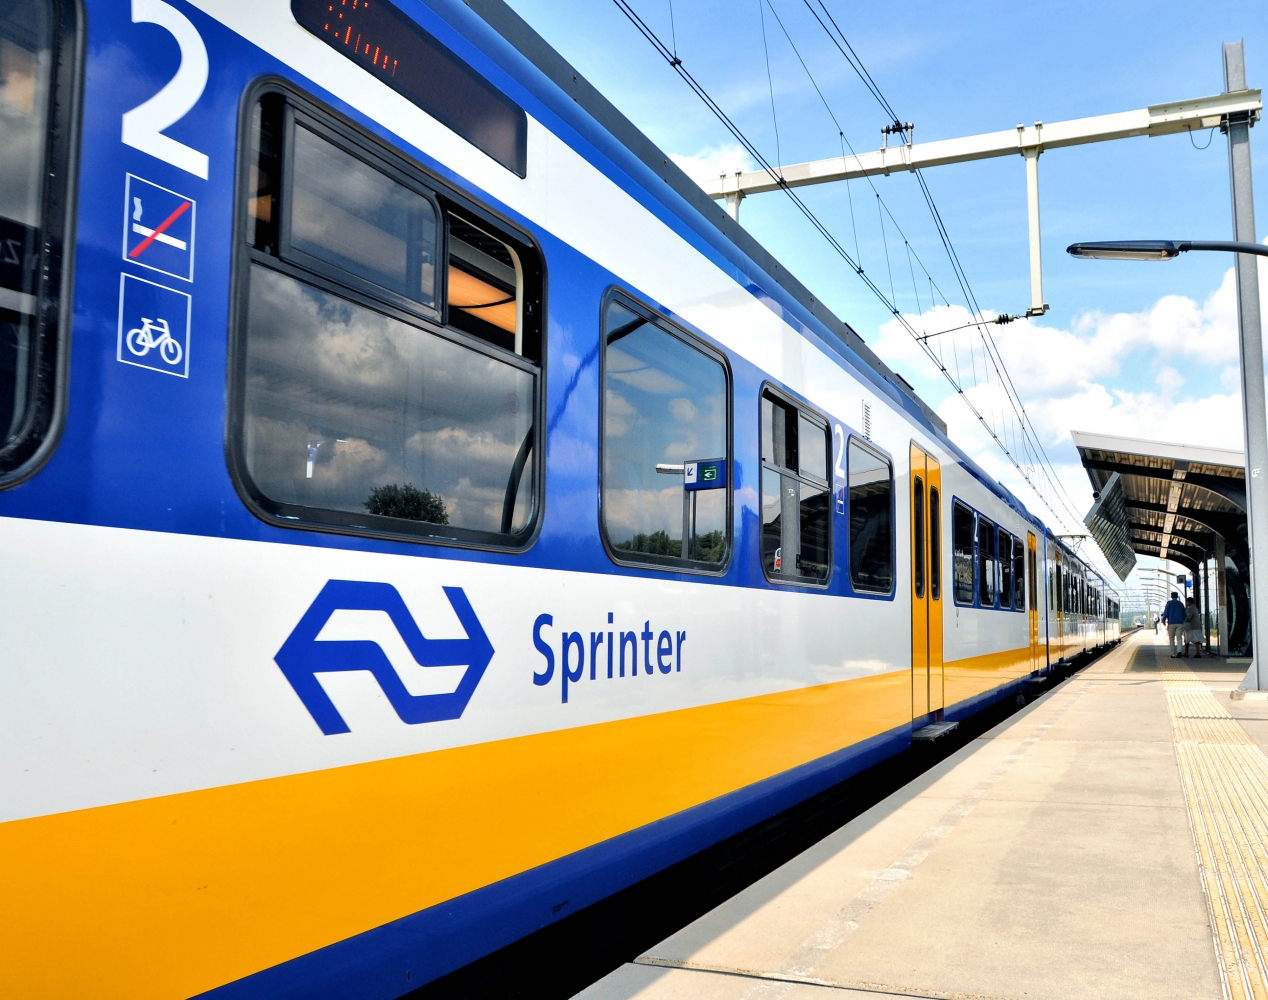 Sprinter trein in beeld - Station